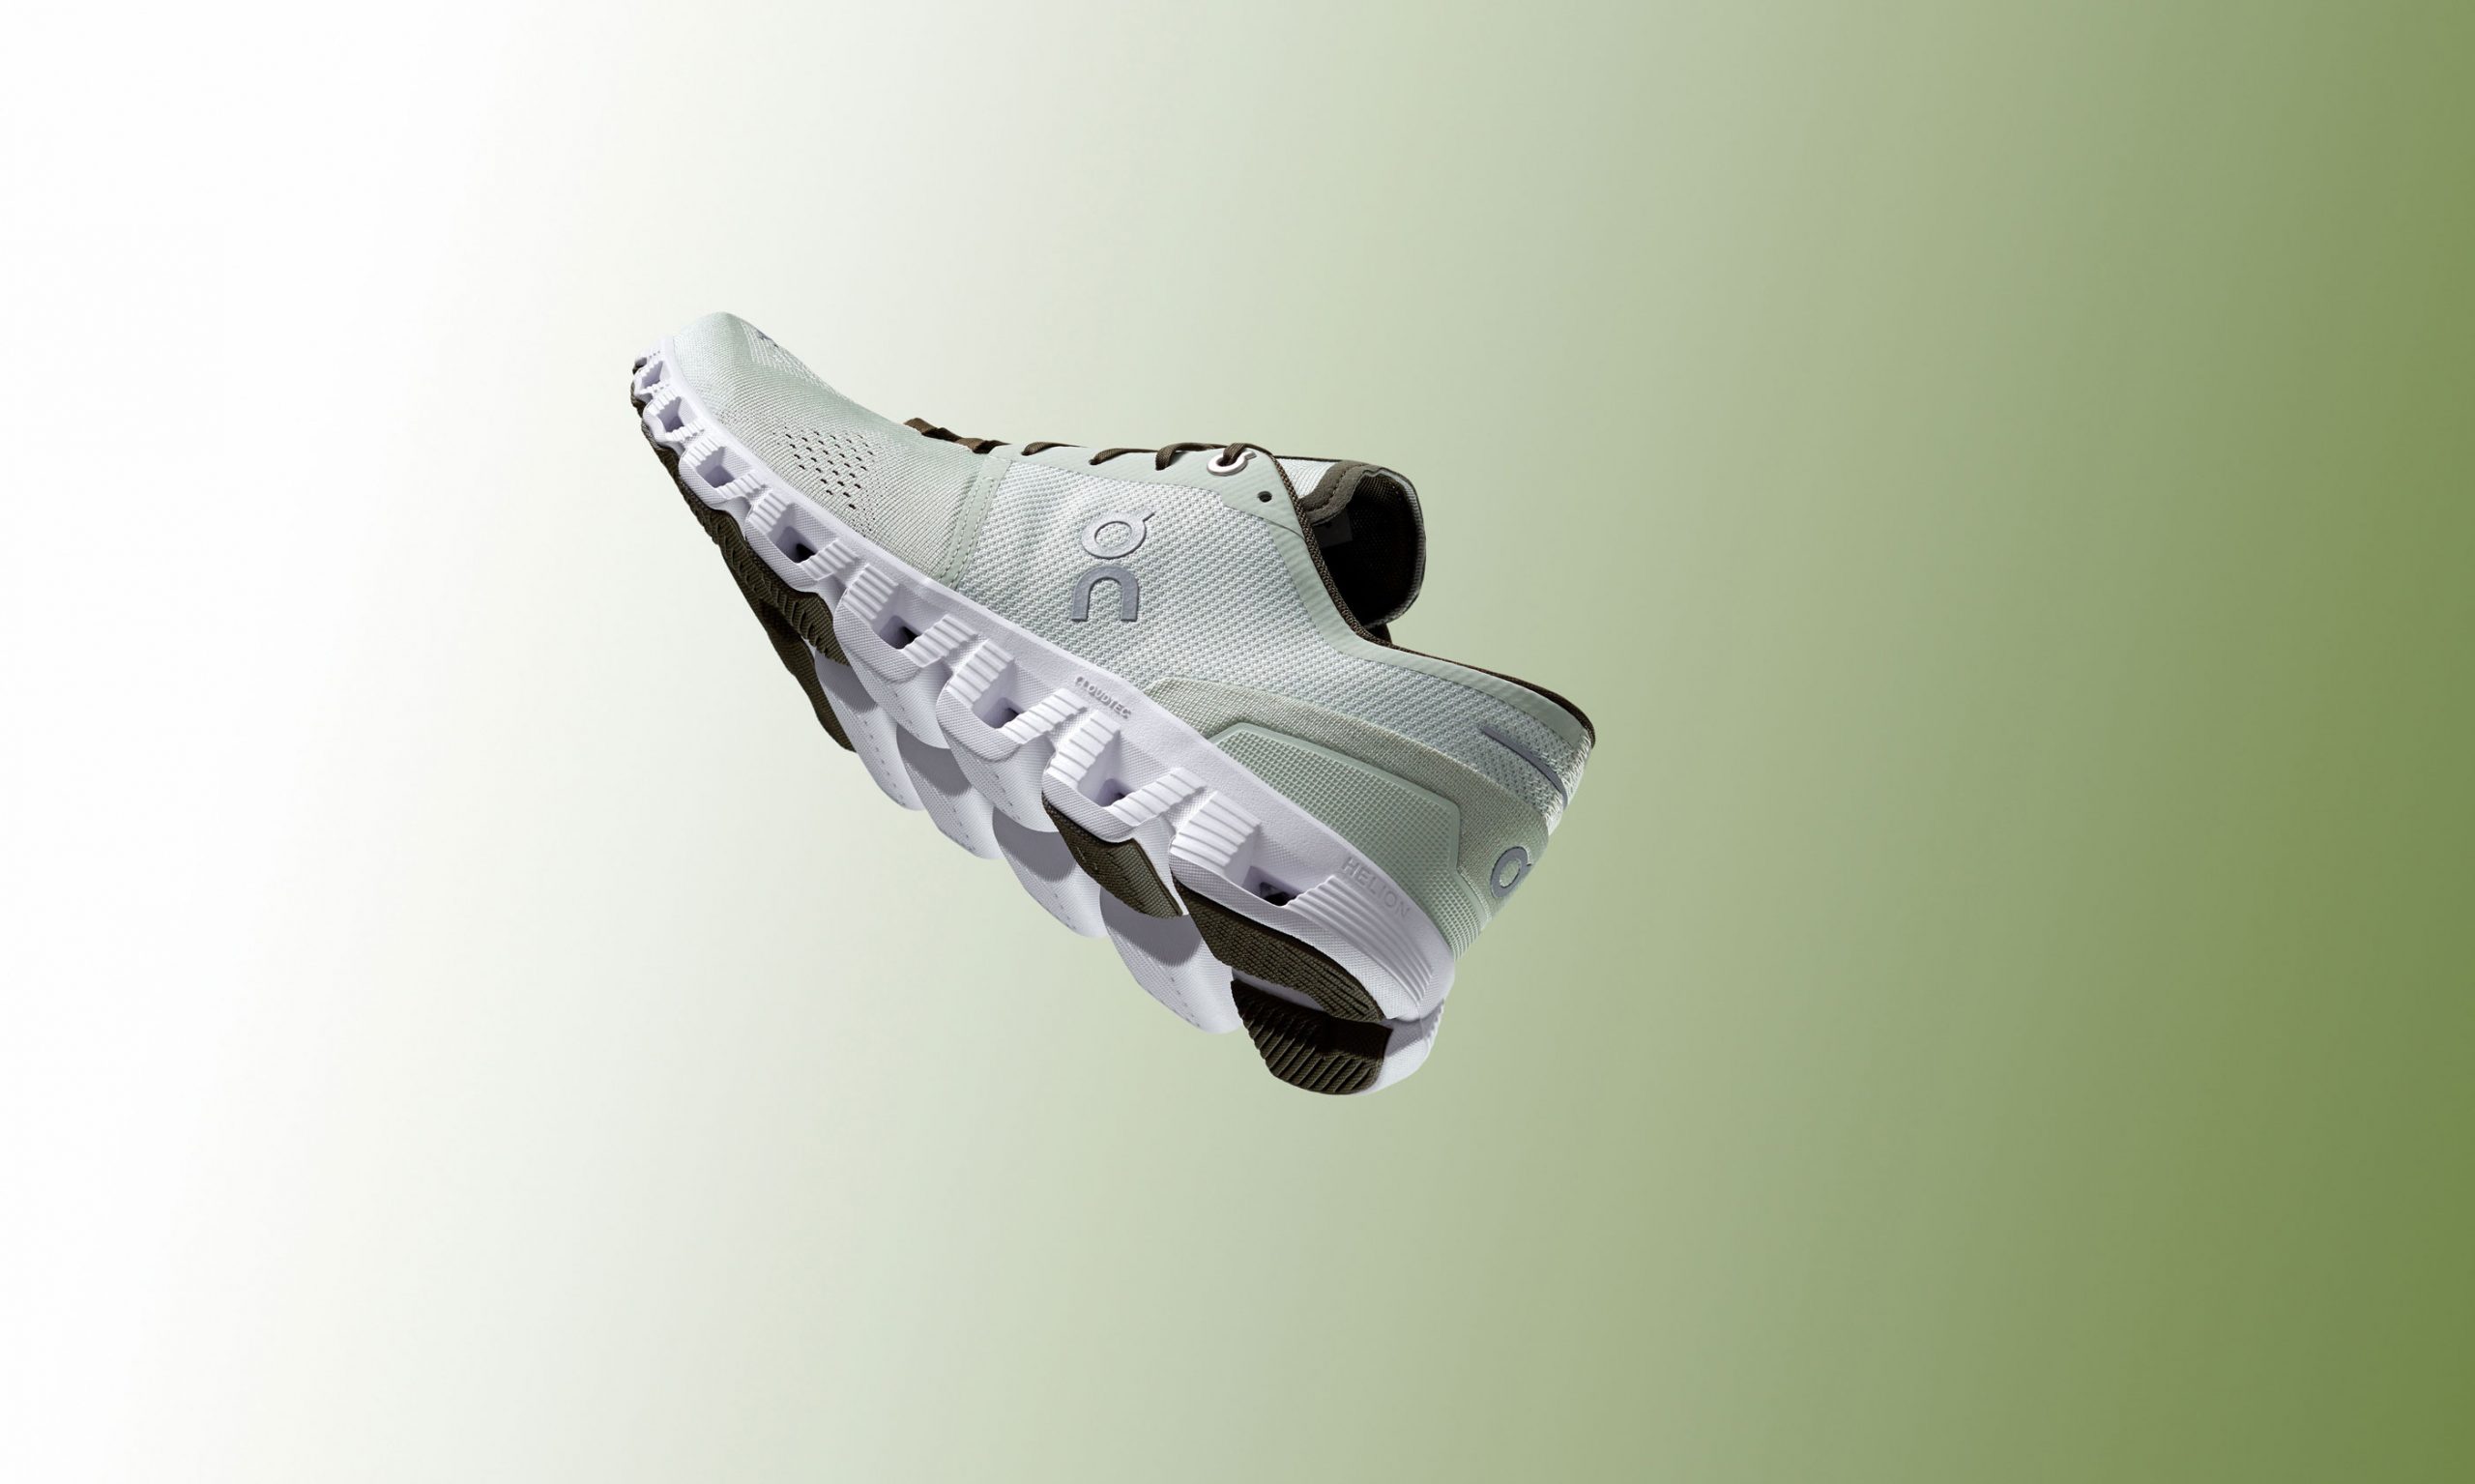 On 昂跑发布新一代 Cloud X 运动鞋